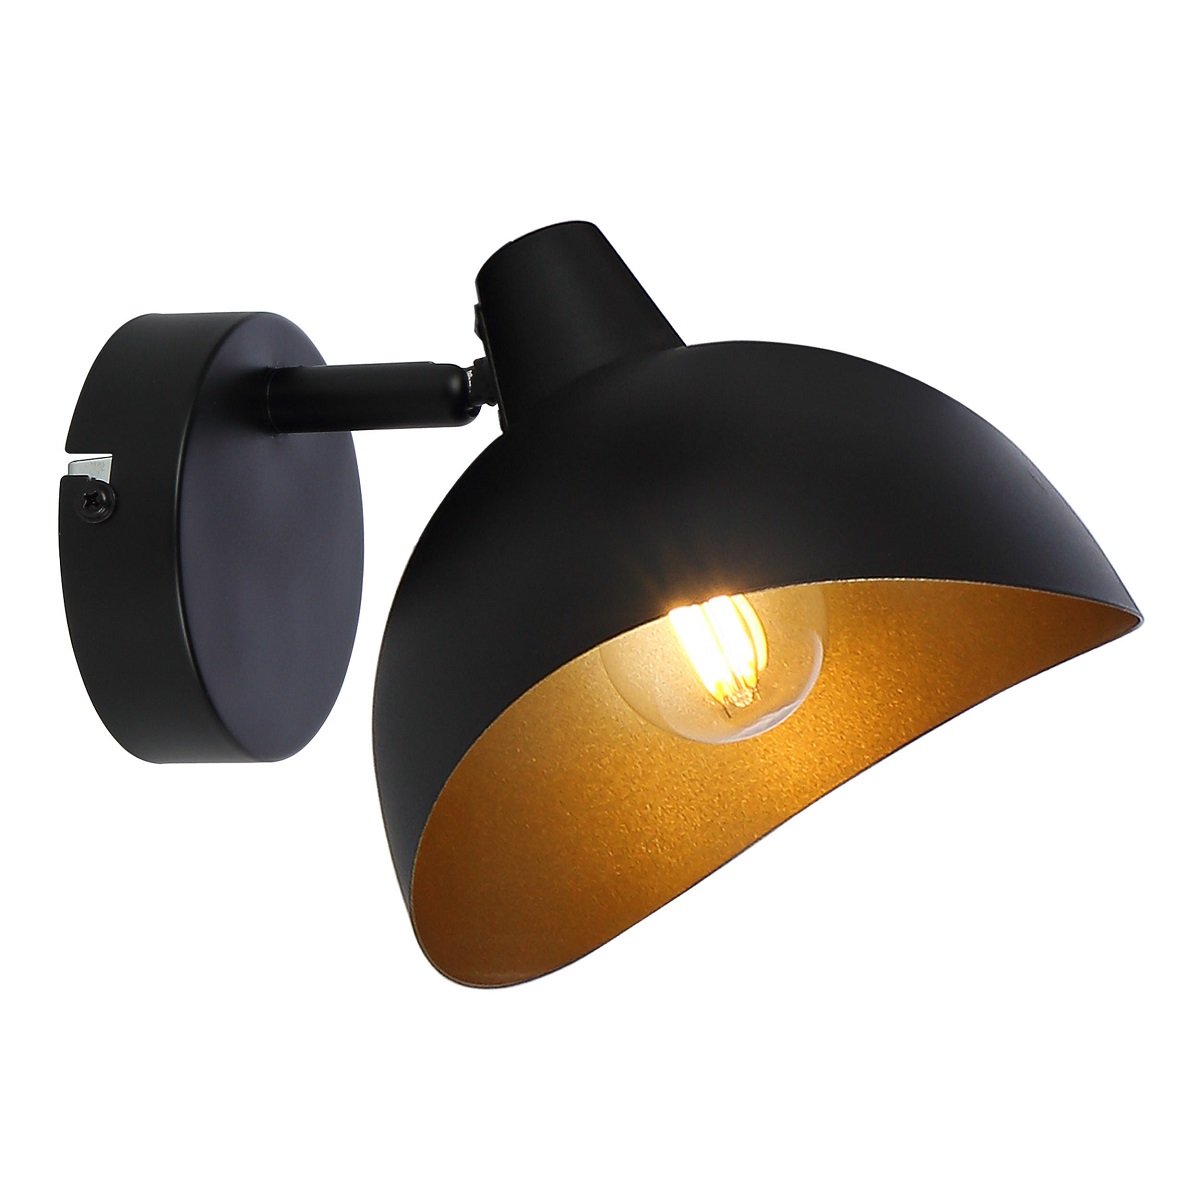 Brilliant Leuchten kaufen schwarz Shop online --> Lampen Layton No. gold & Wandleuchte HK17331S86 im Leuchten